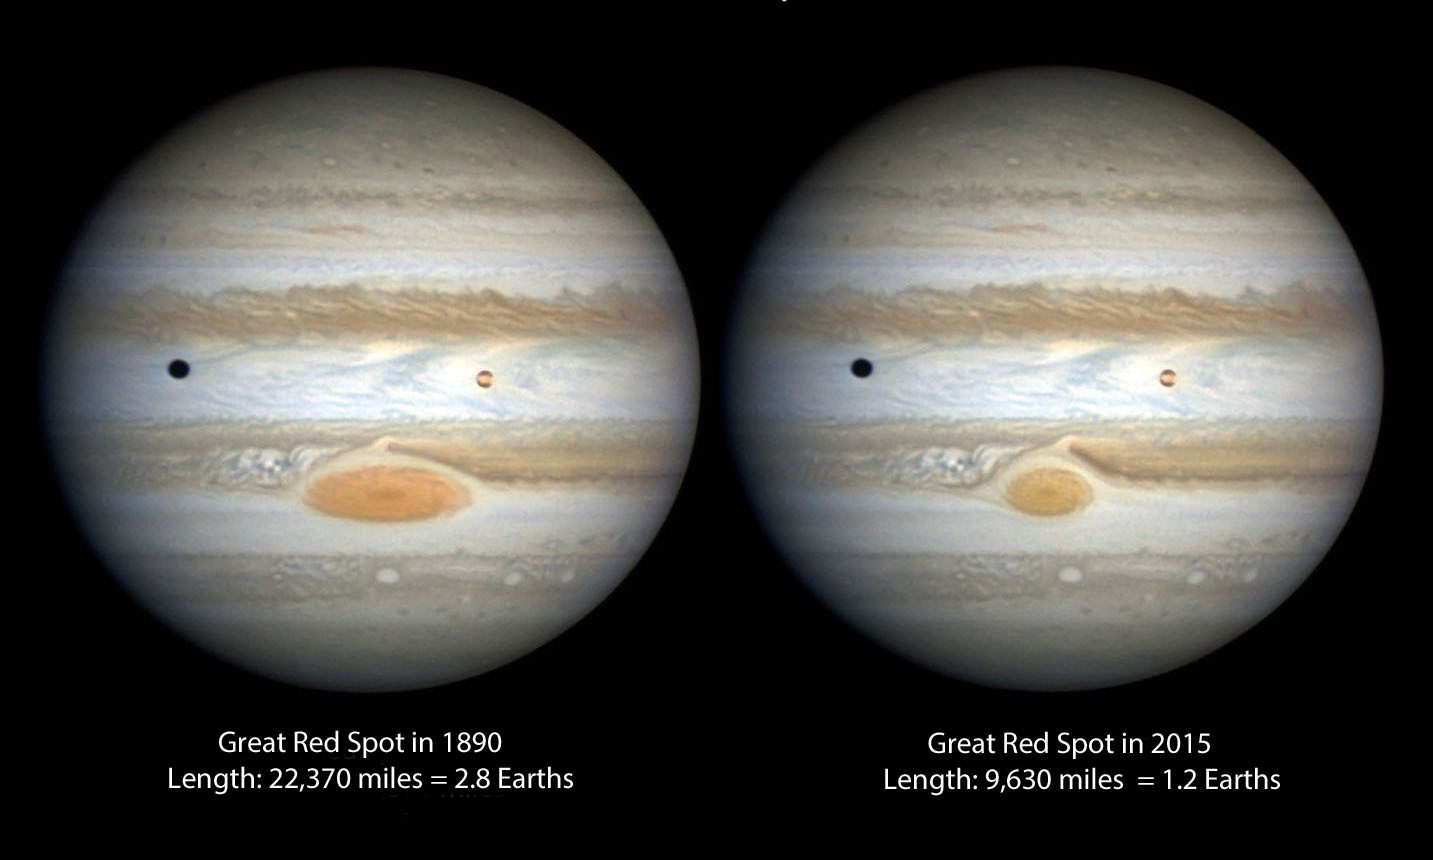 miscarea furtunii in atmosfera lui Jupiter